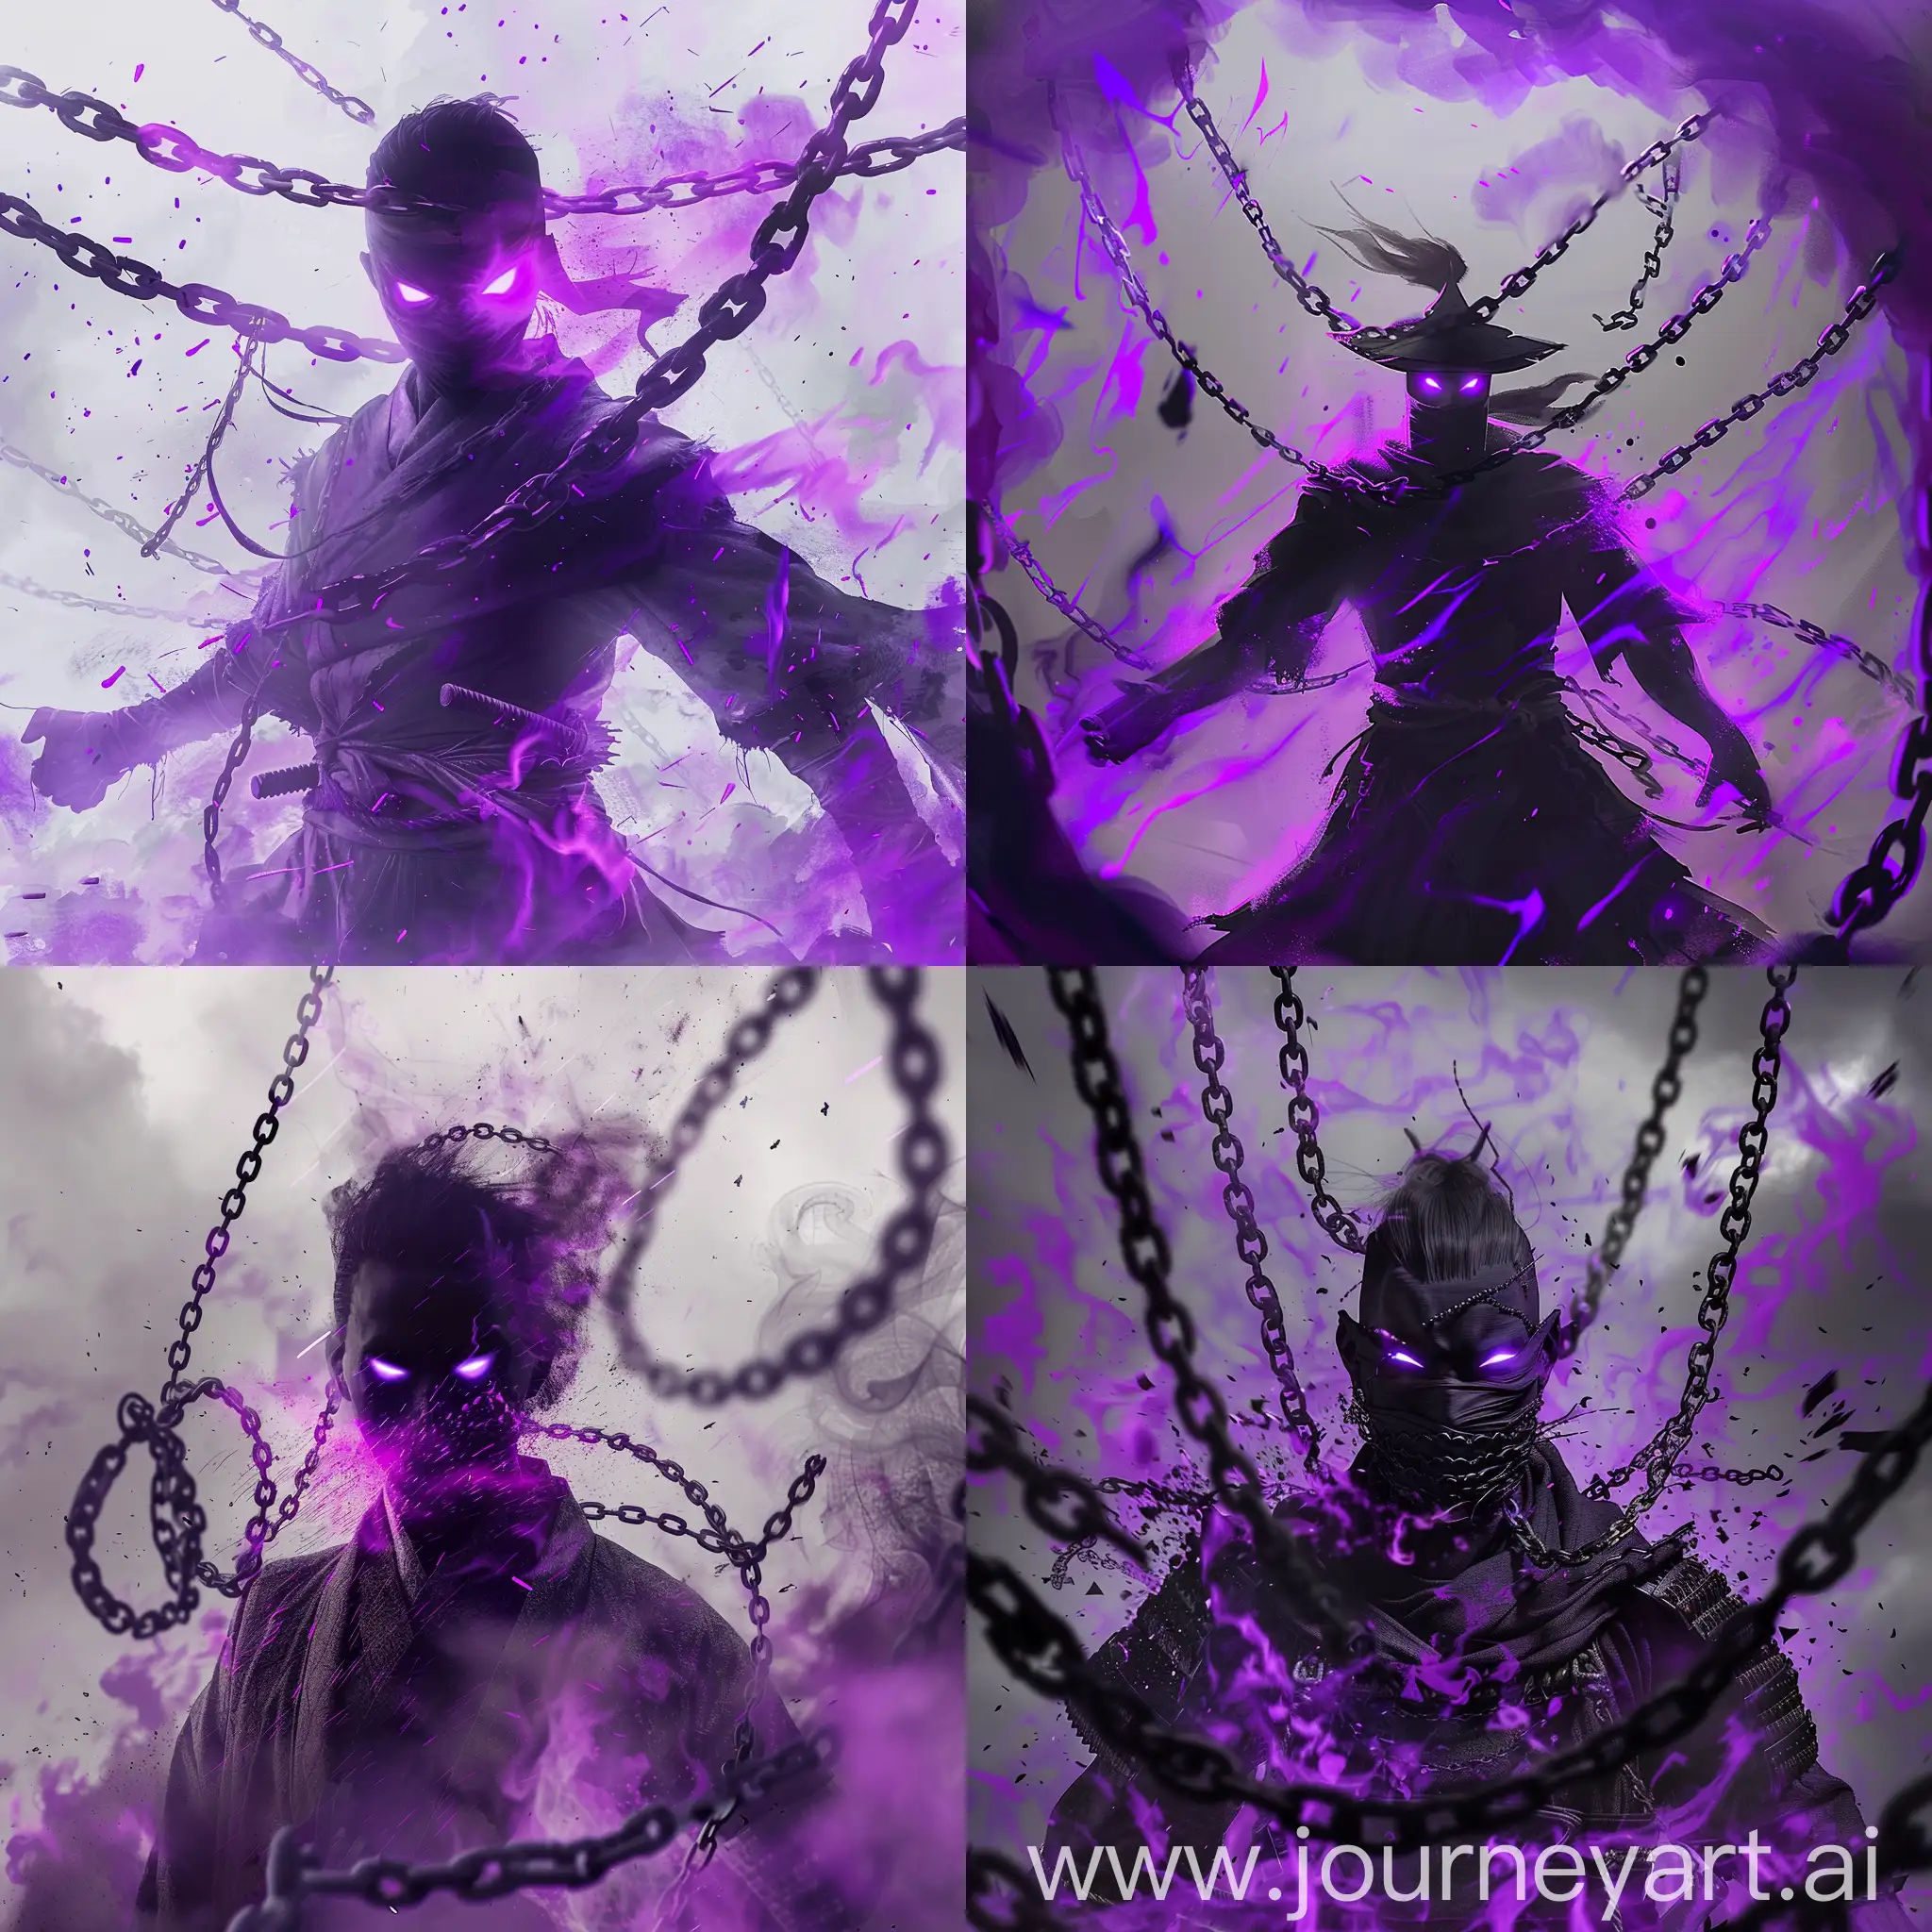 сгенерируй теневого самурая без лица, у него светятся глаза фиолетовым цветом, вокруг летают цепи и фиолетвый дым